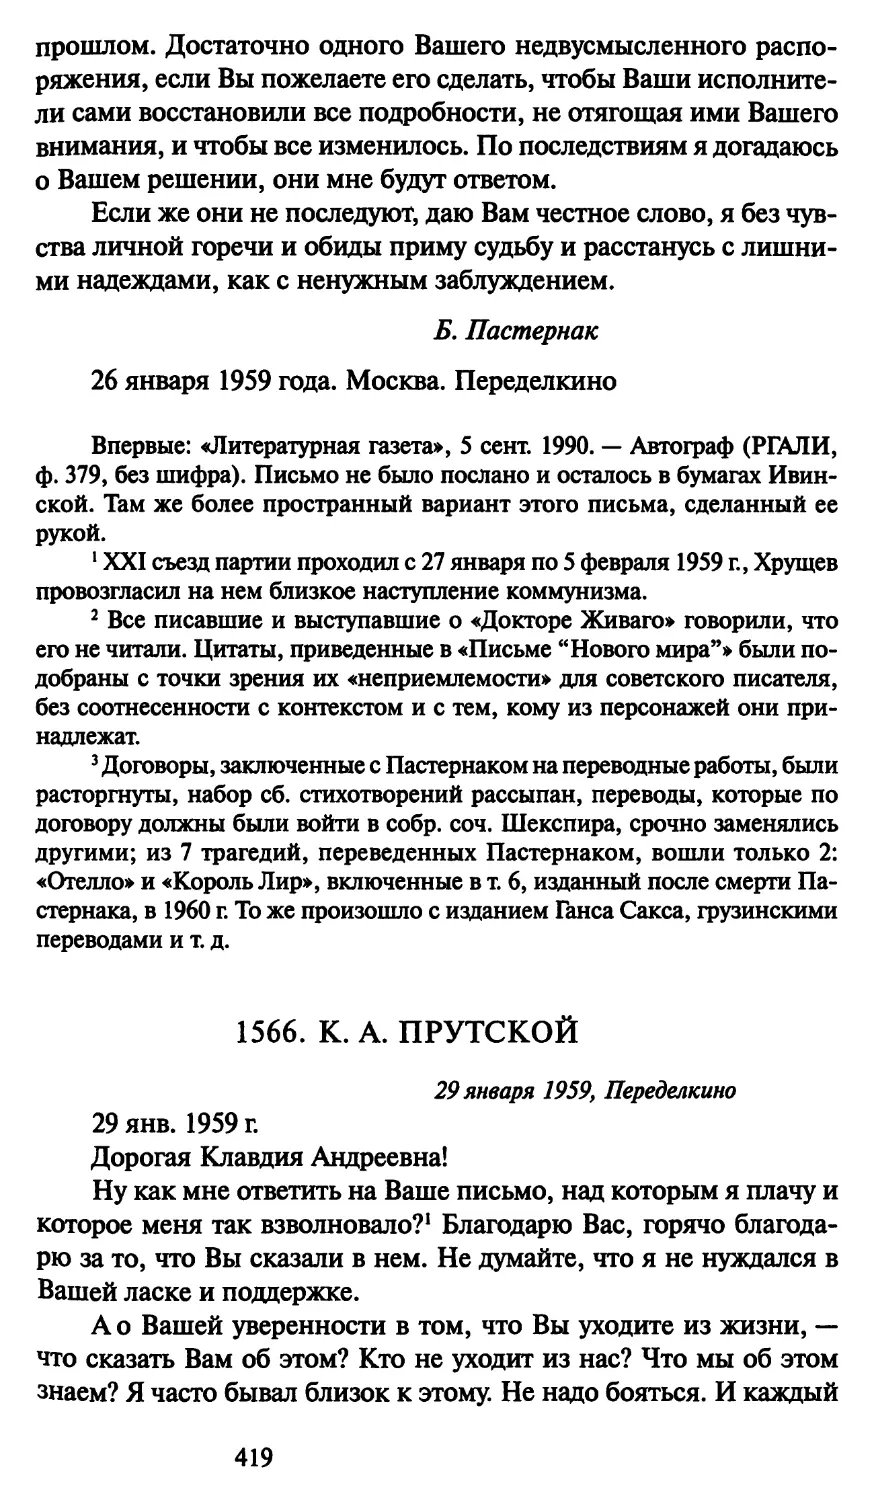 1566. К. А. Прутской 29 января 1959